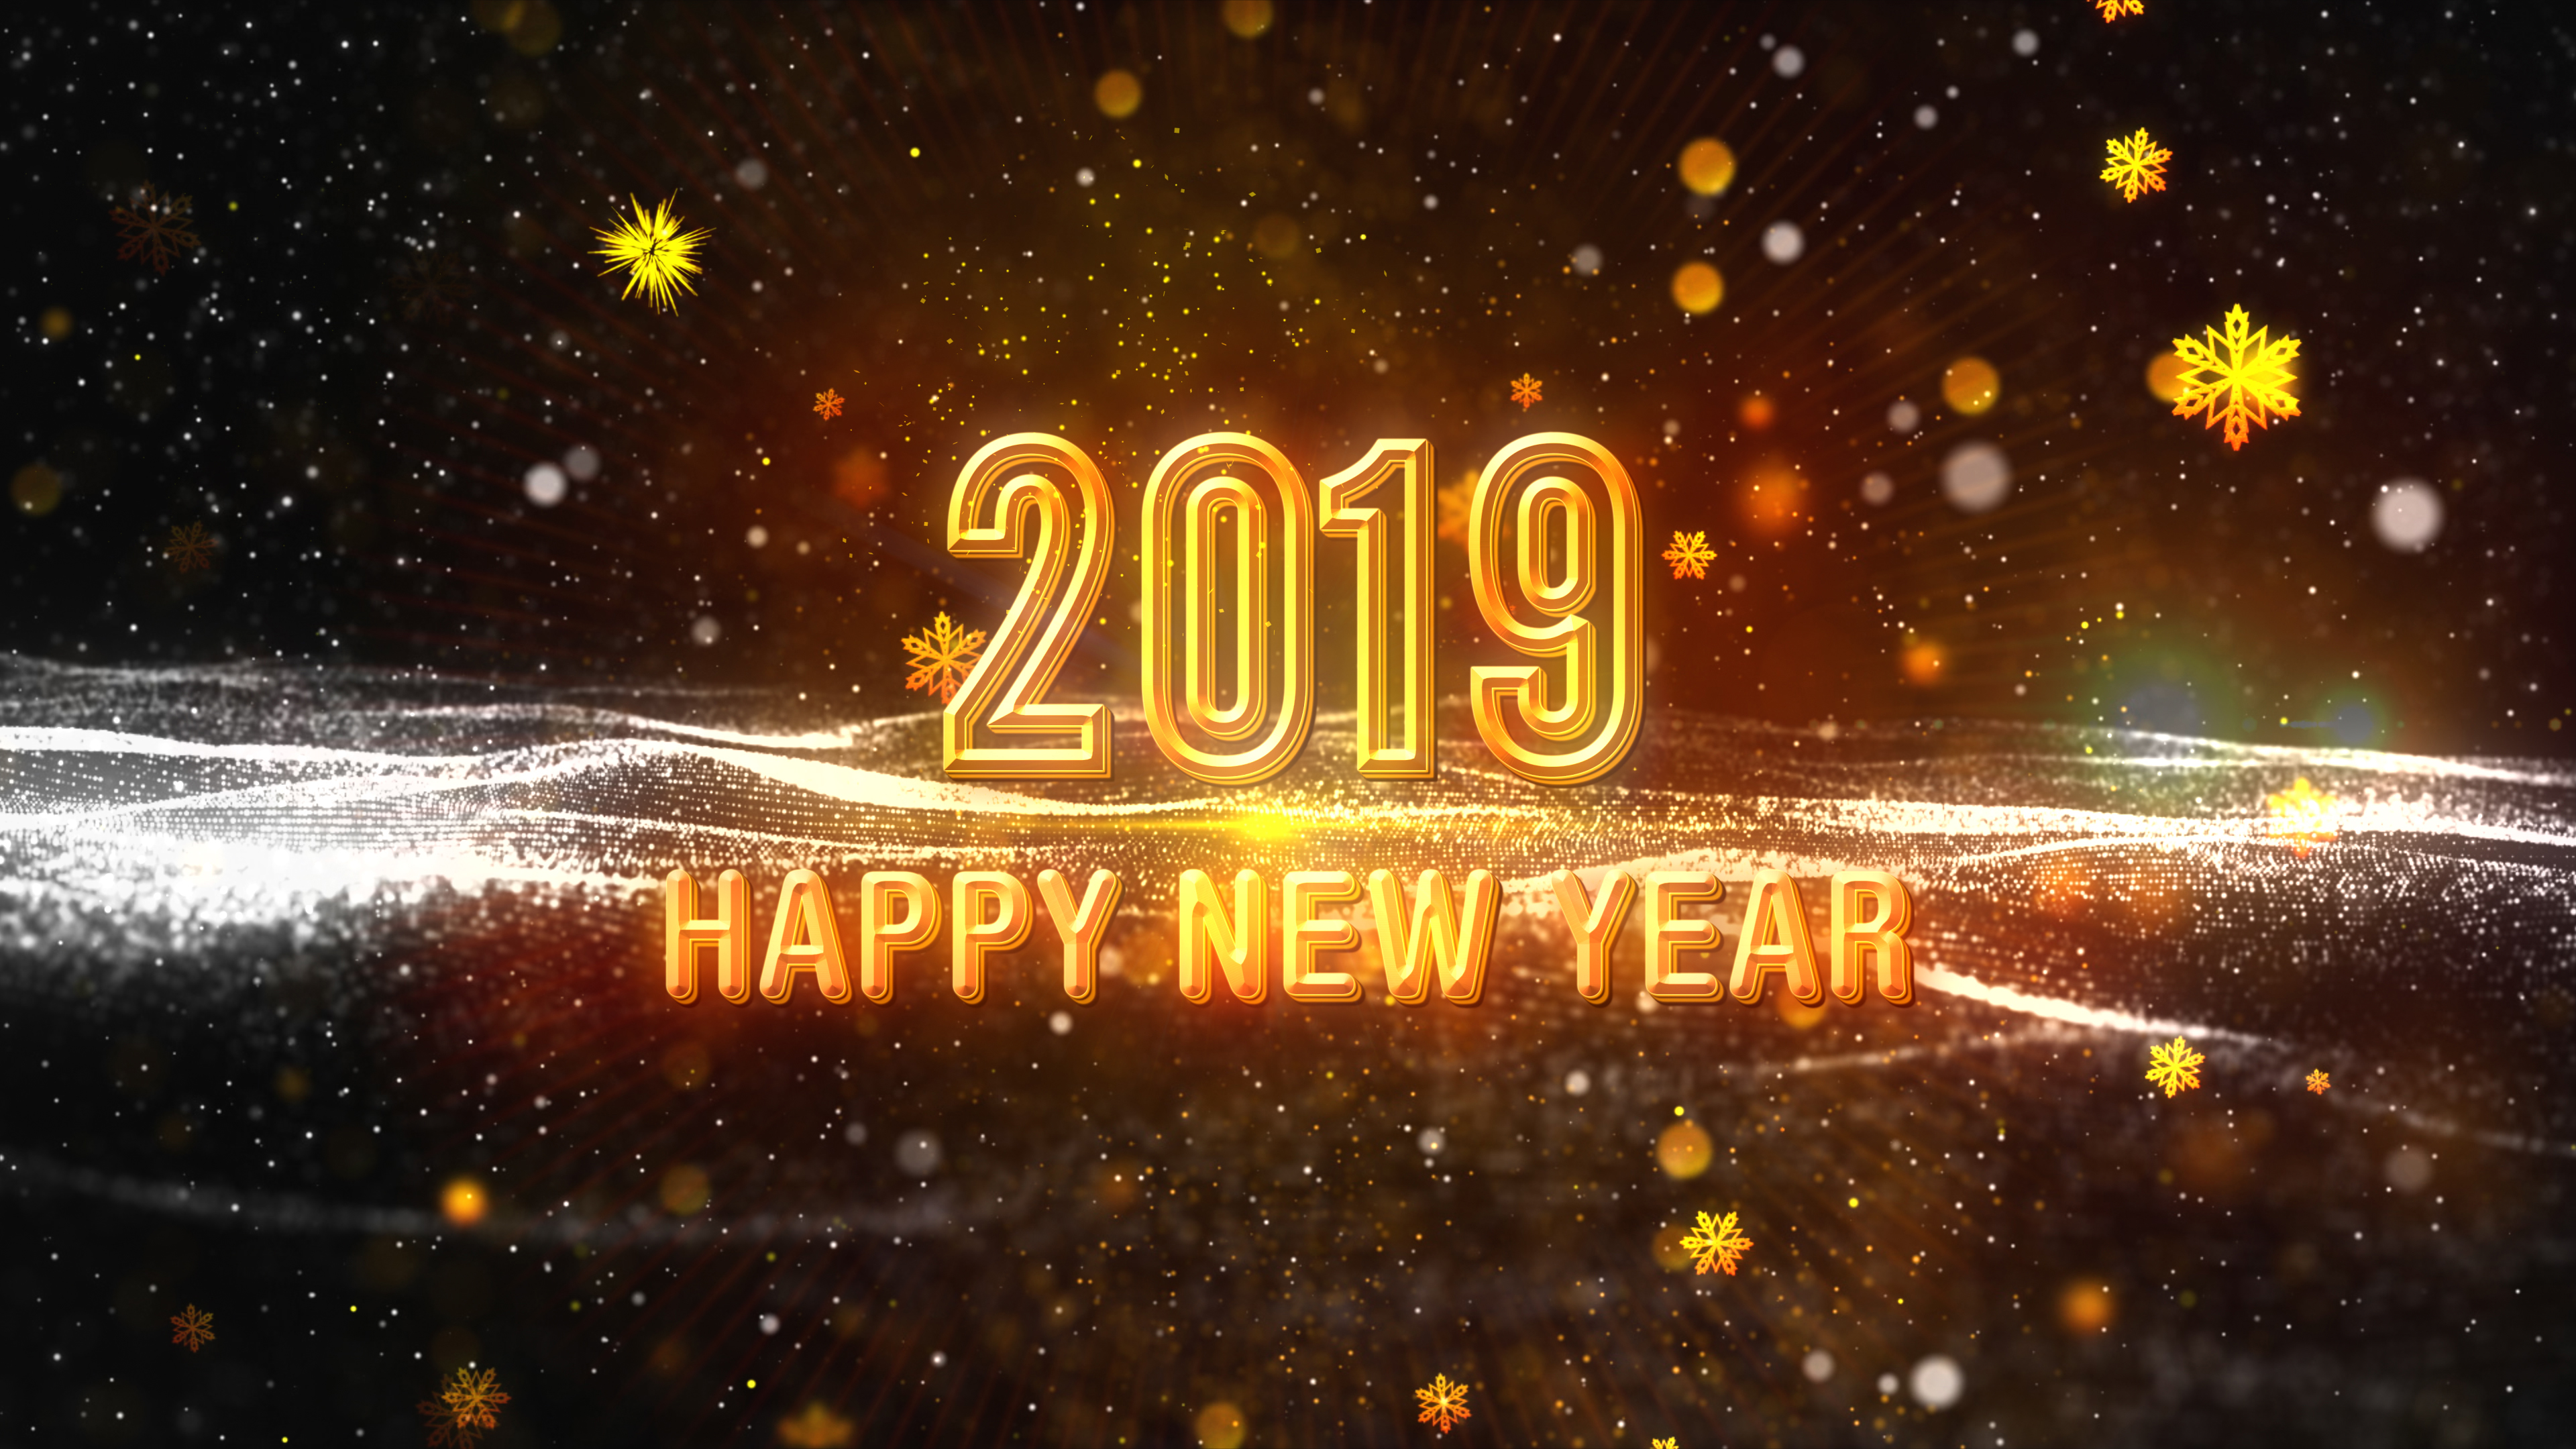 Happy New Year 2019 V2.jpg